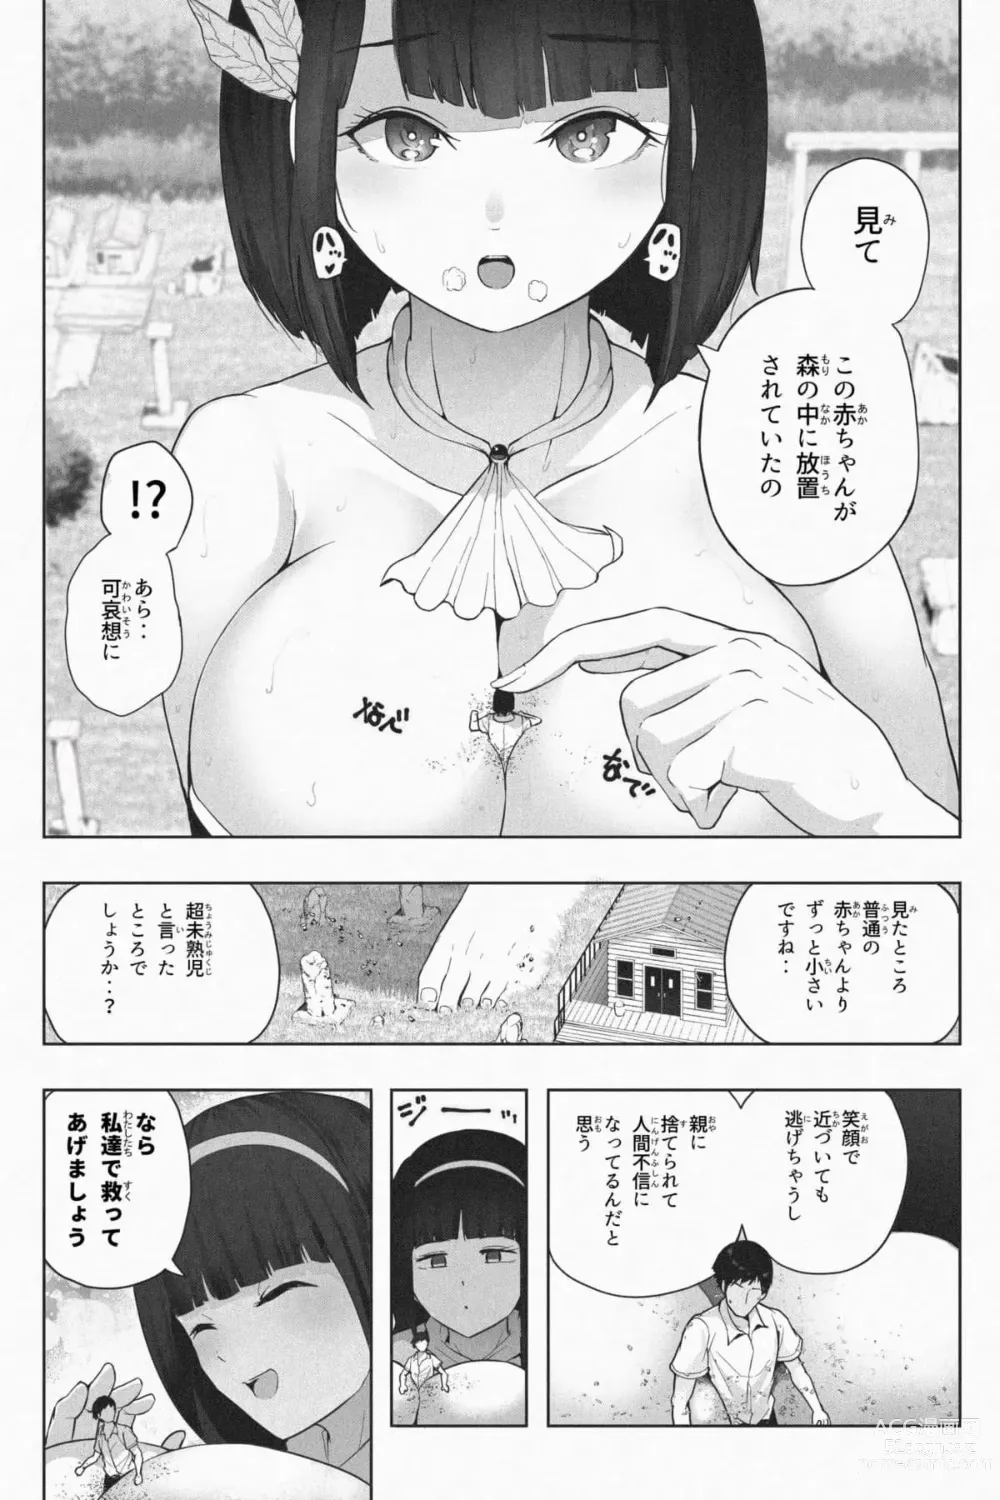 Page 9 of doujinshi Kyoujin Shima e Youkoso